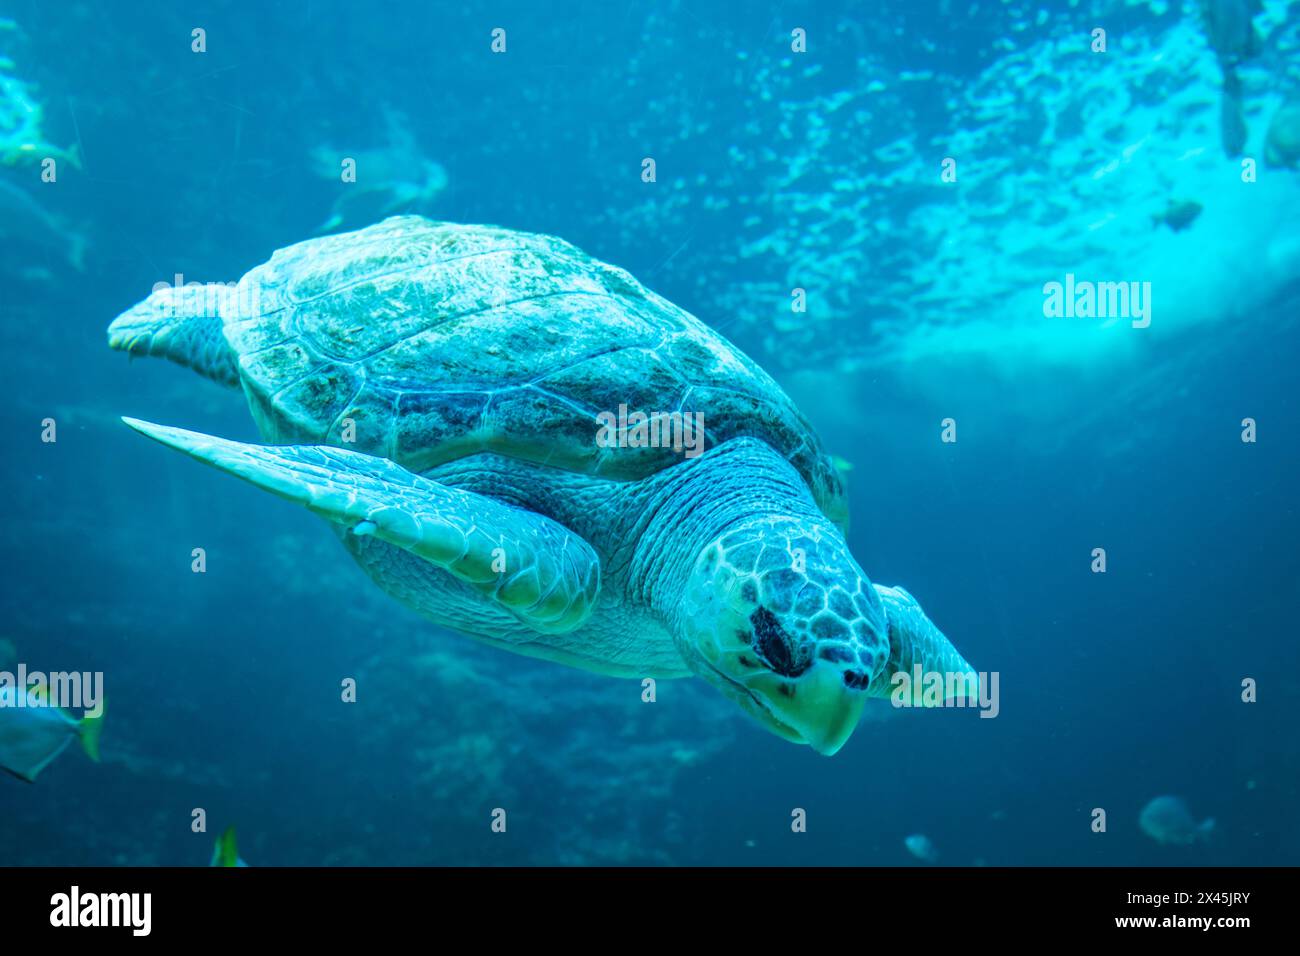 Turtle swimming underwater Stock Photo